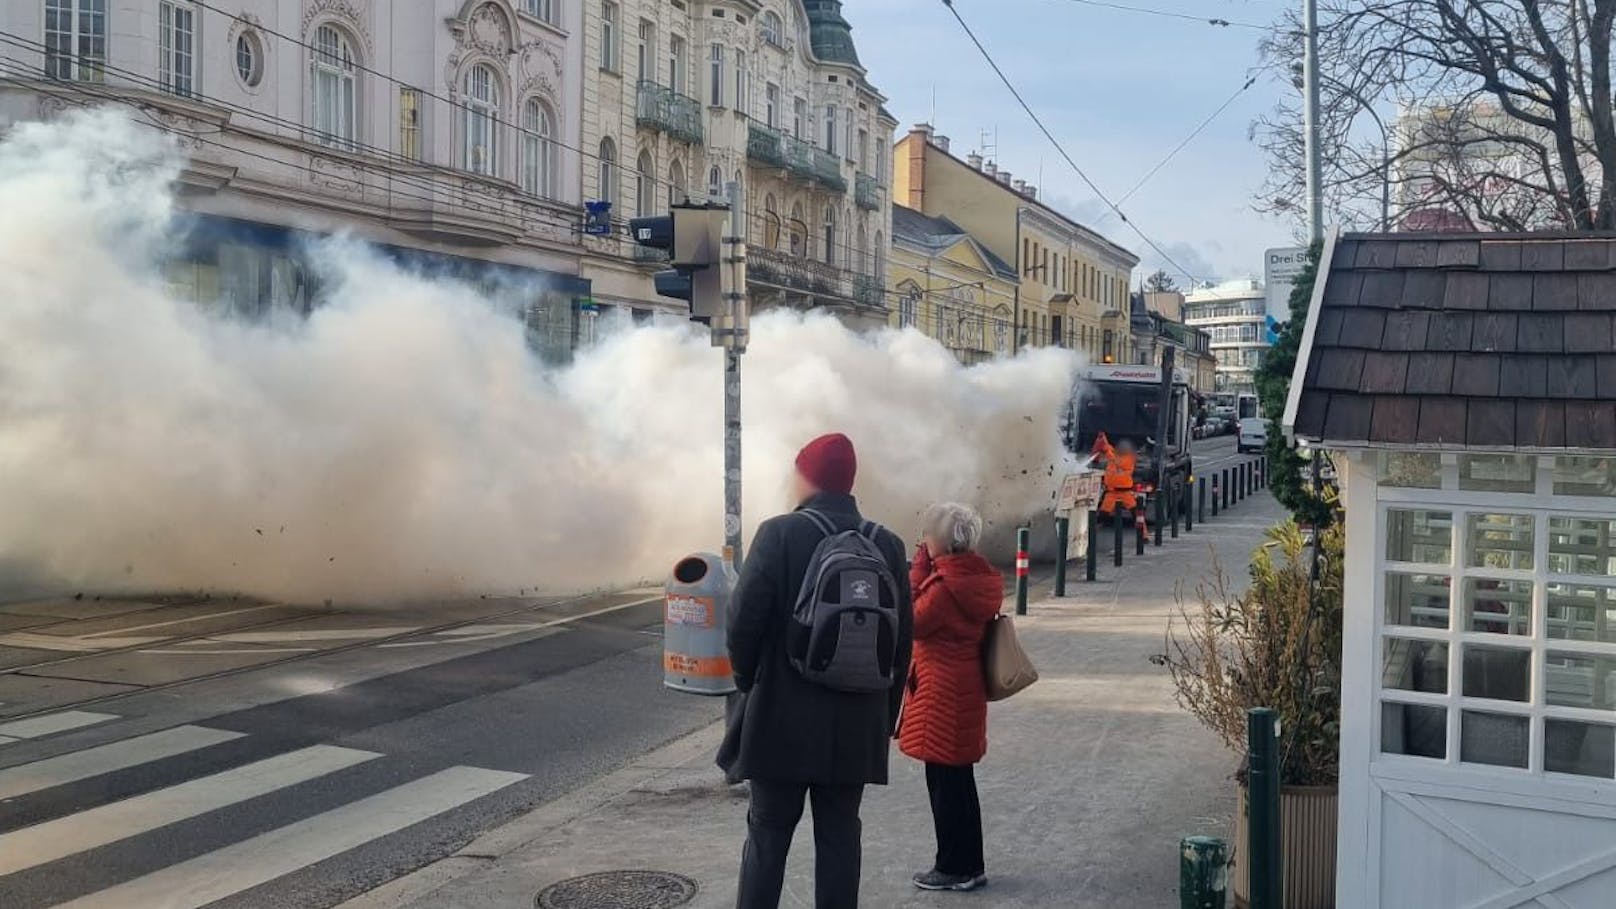 Riesige Rauchsäule über Wien – Video zeigt Löscheinsatz